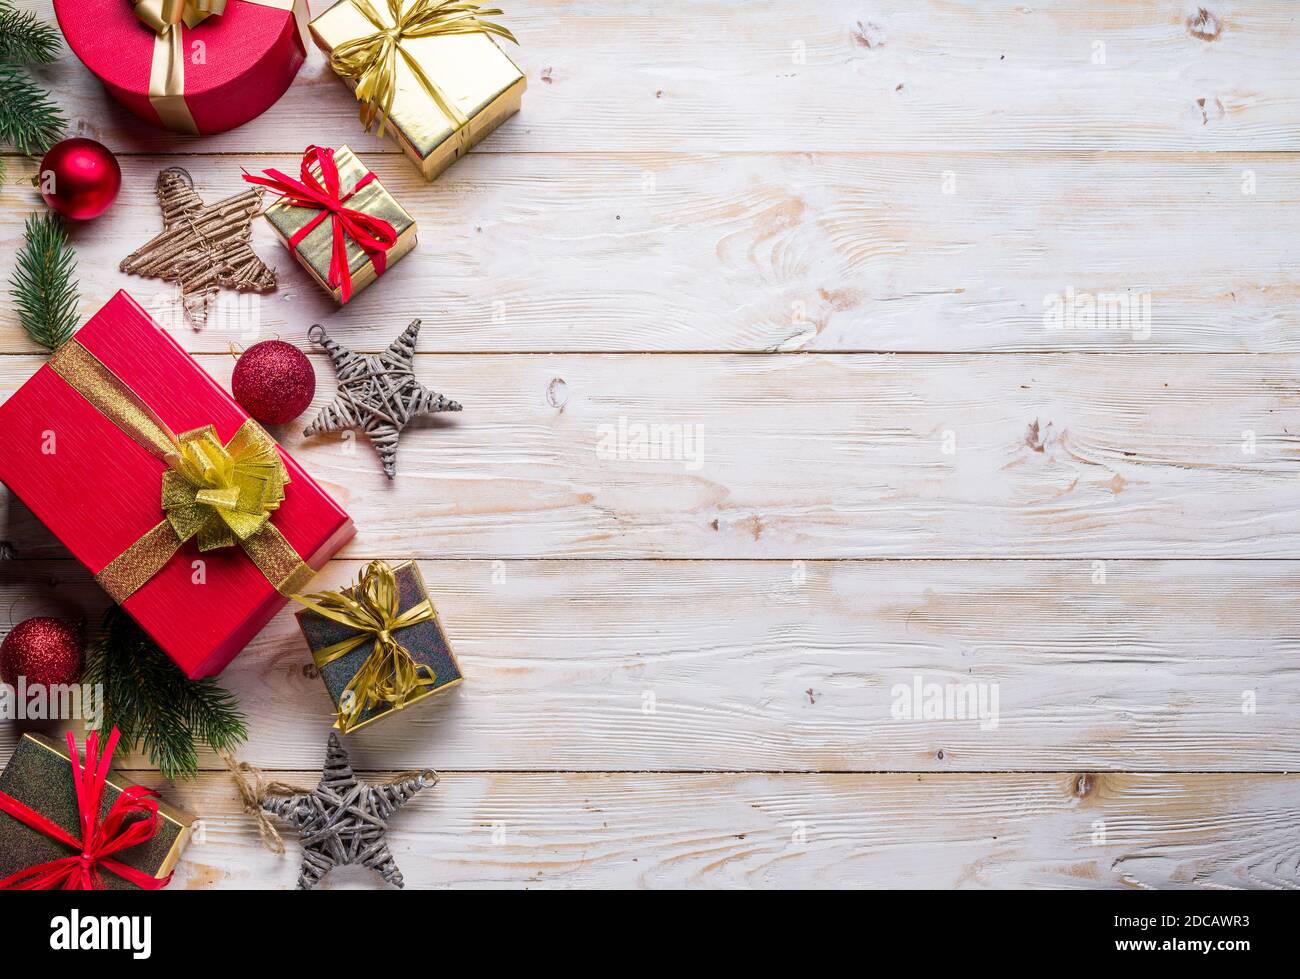 Décoration de Noël et boîtes cadeaux sur la table en bois. Noël ou nouvel an. Vue de dessus. Banque D'Images